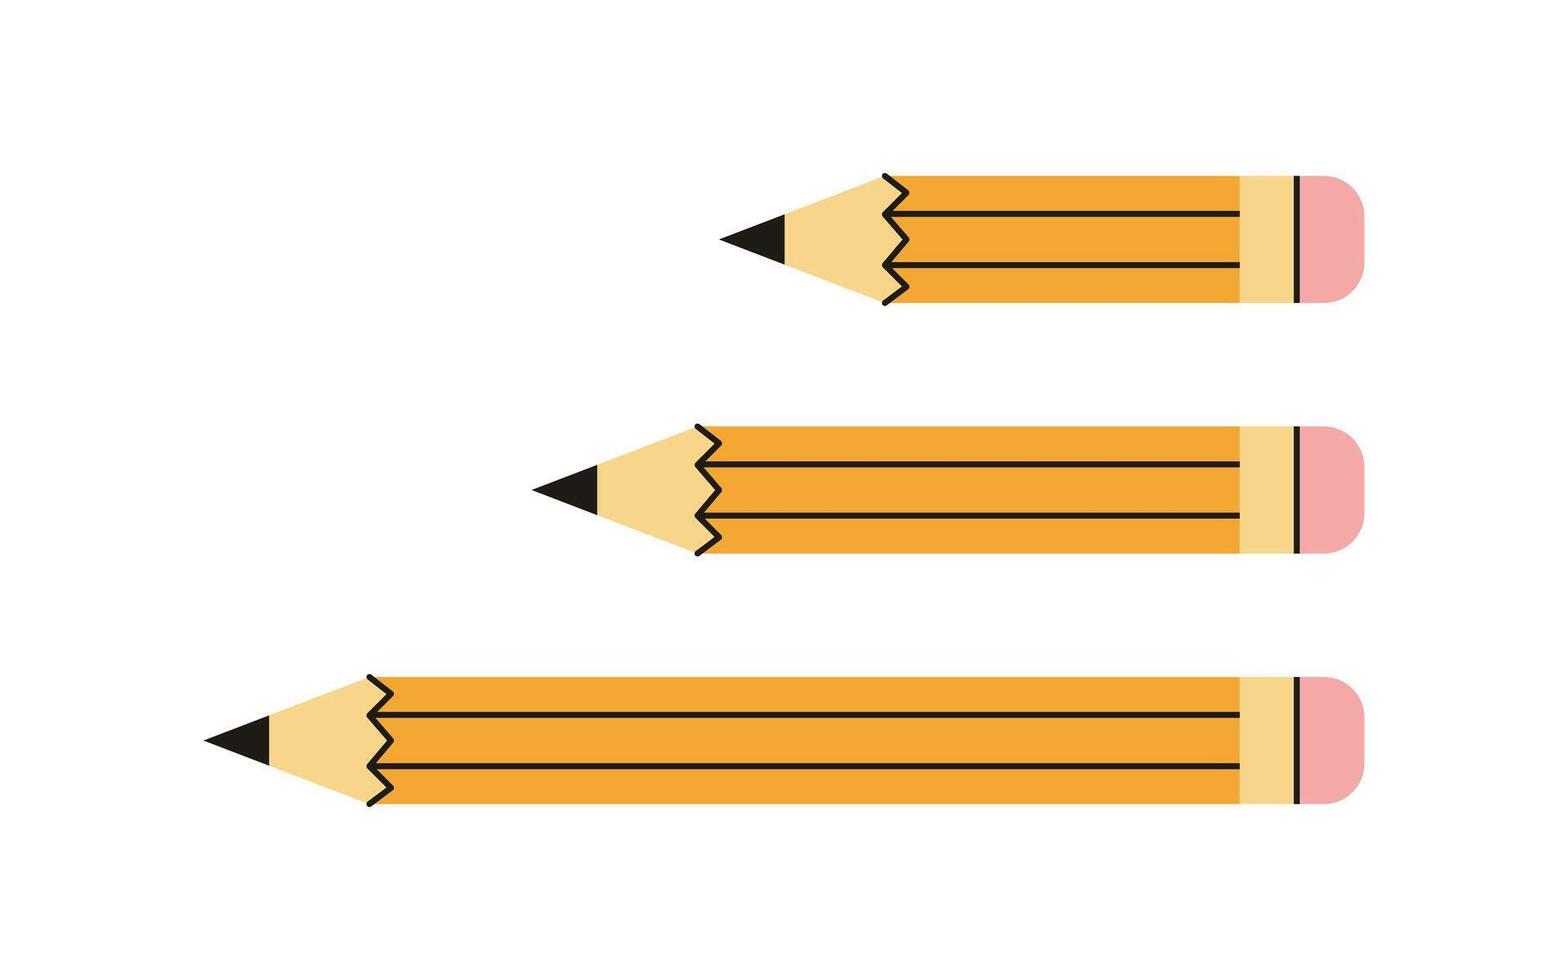 amarillo lápiz y de madera objeto para escritura y dibujo, dibujos animados corto amarillo lápiz caucho borrador concepto vector ilustración.